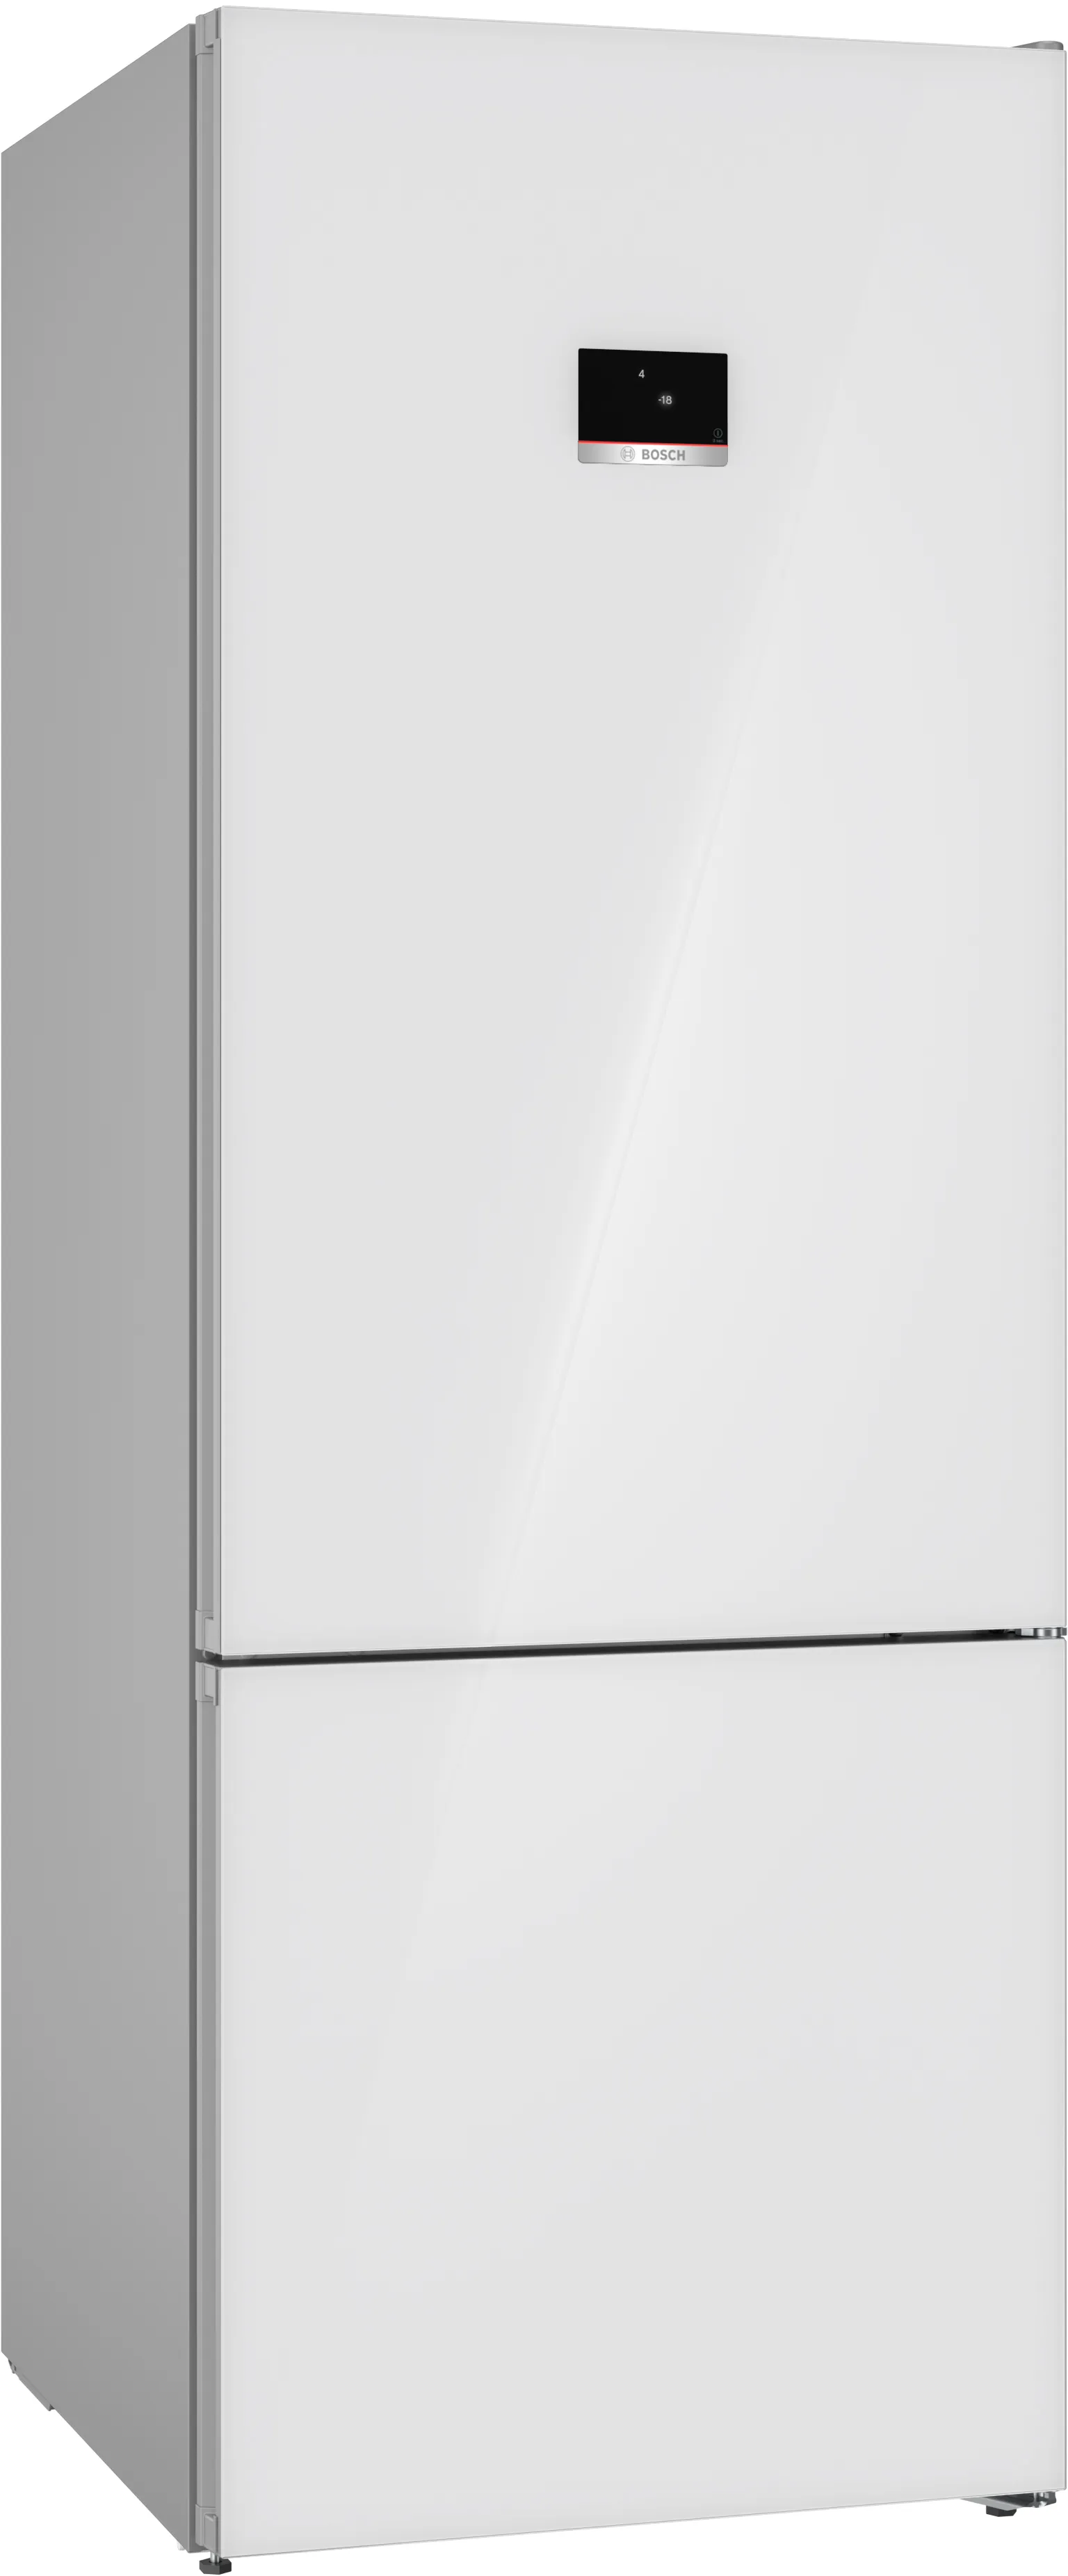 Серия 6 Отдельностоящий холодильник с нижней морозильной камерой 193 x 70 cm Белый 